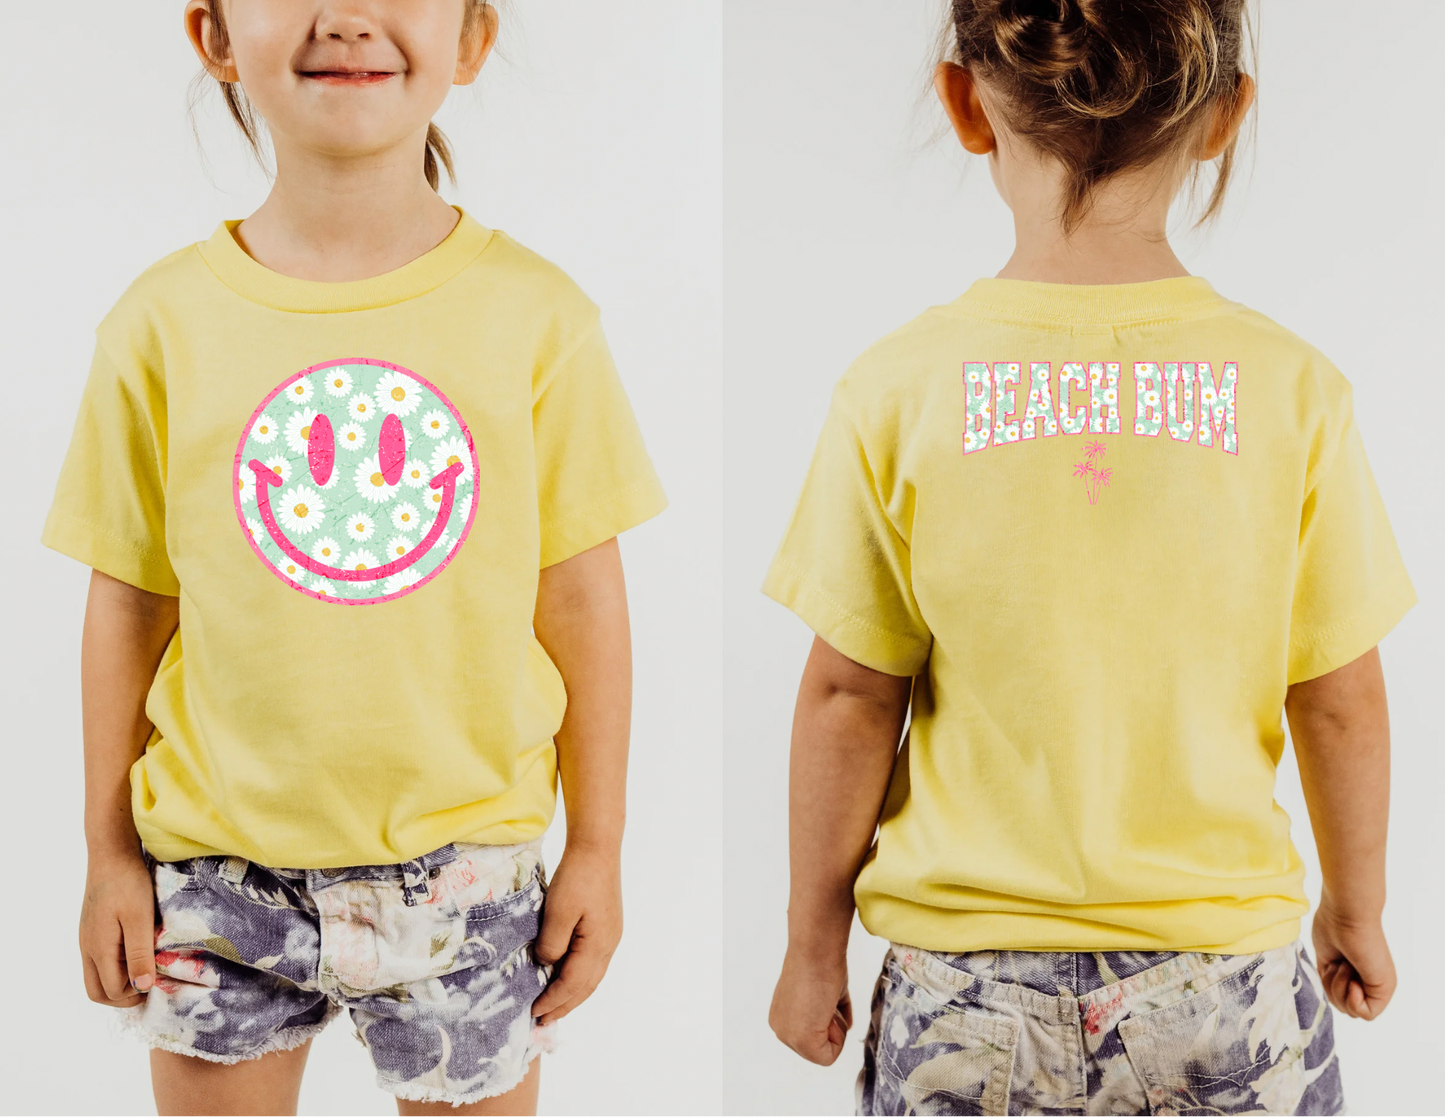 Girls Smiley Beach Bum Shirt